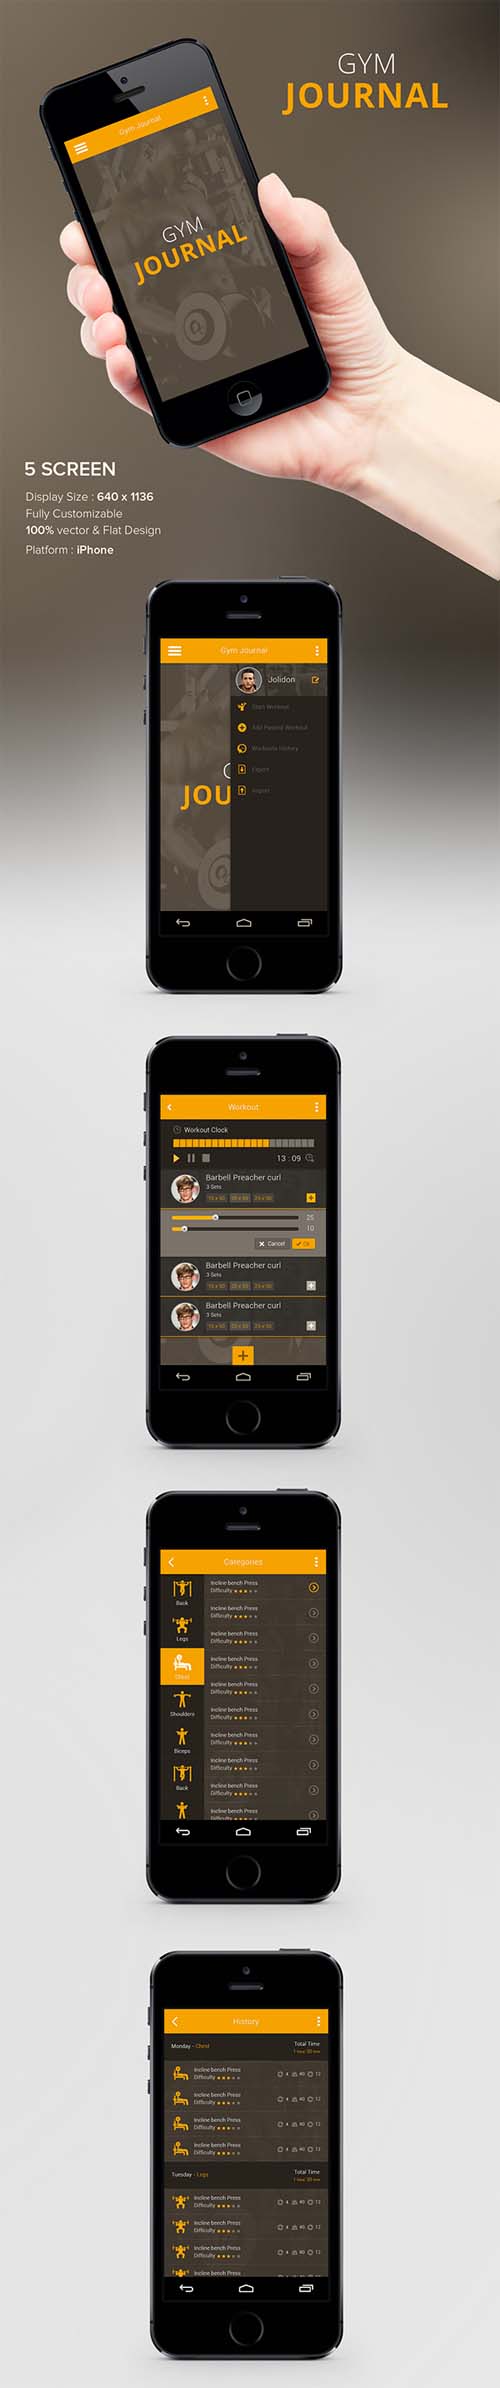 UI/UX design of Gym iPhone App